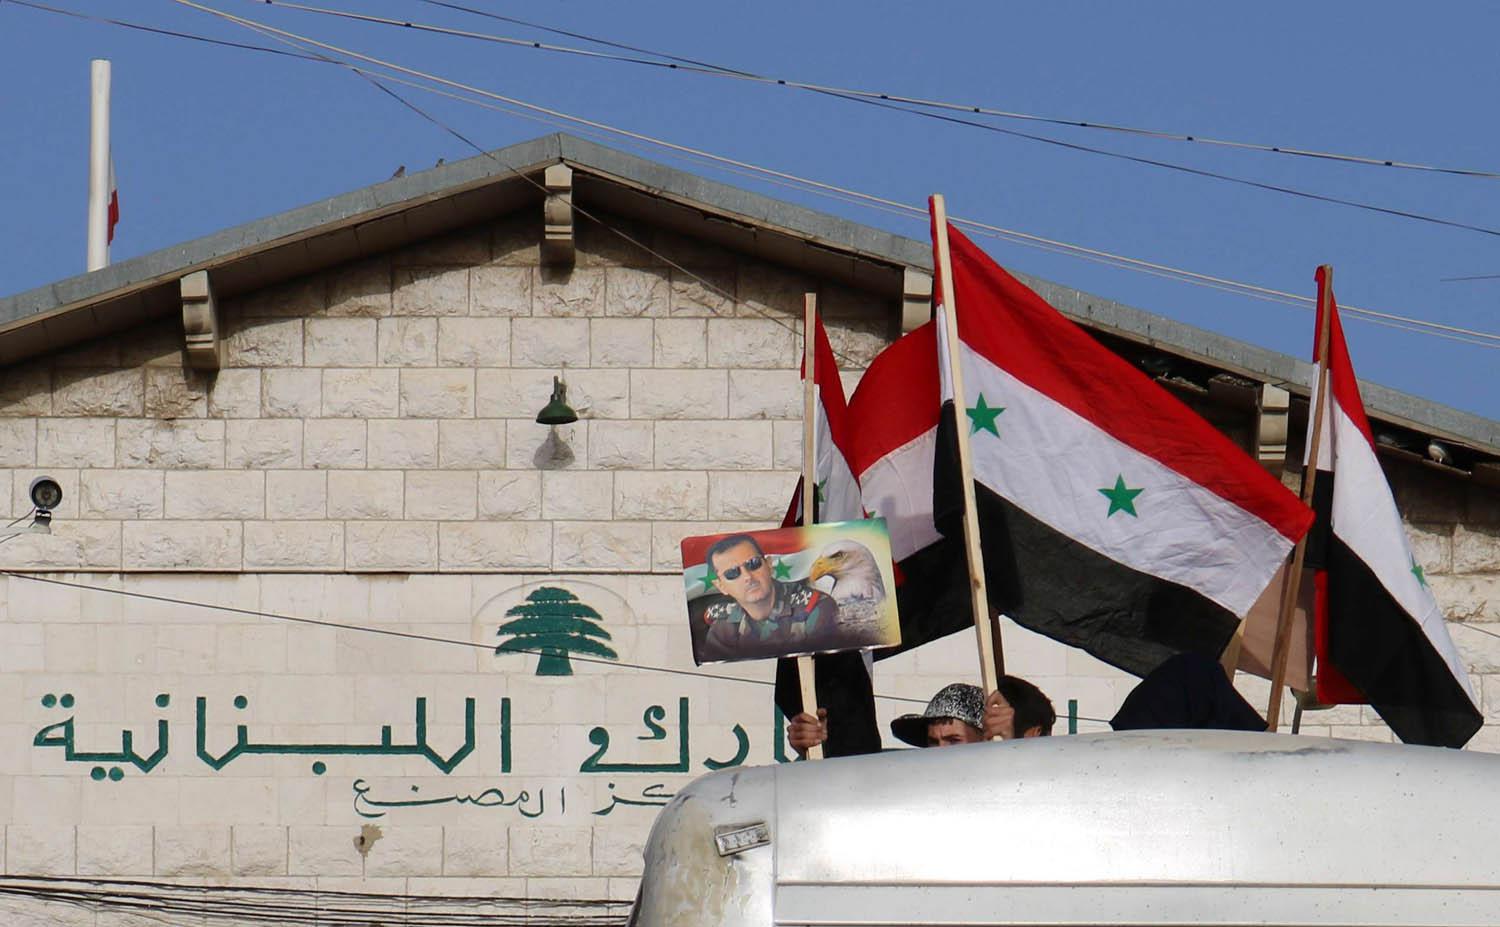 لاجئون سوريين في لبنان يتهيئون للعودة إلى بلادهم